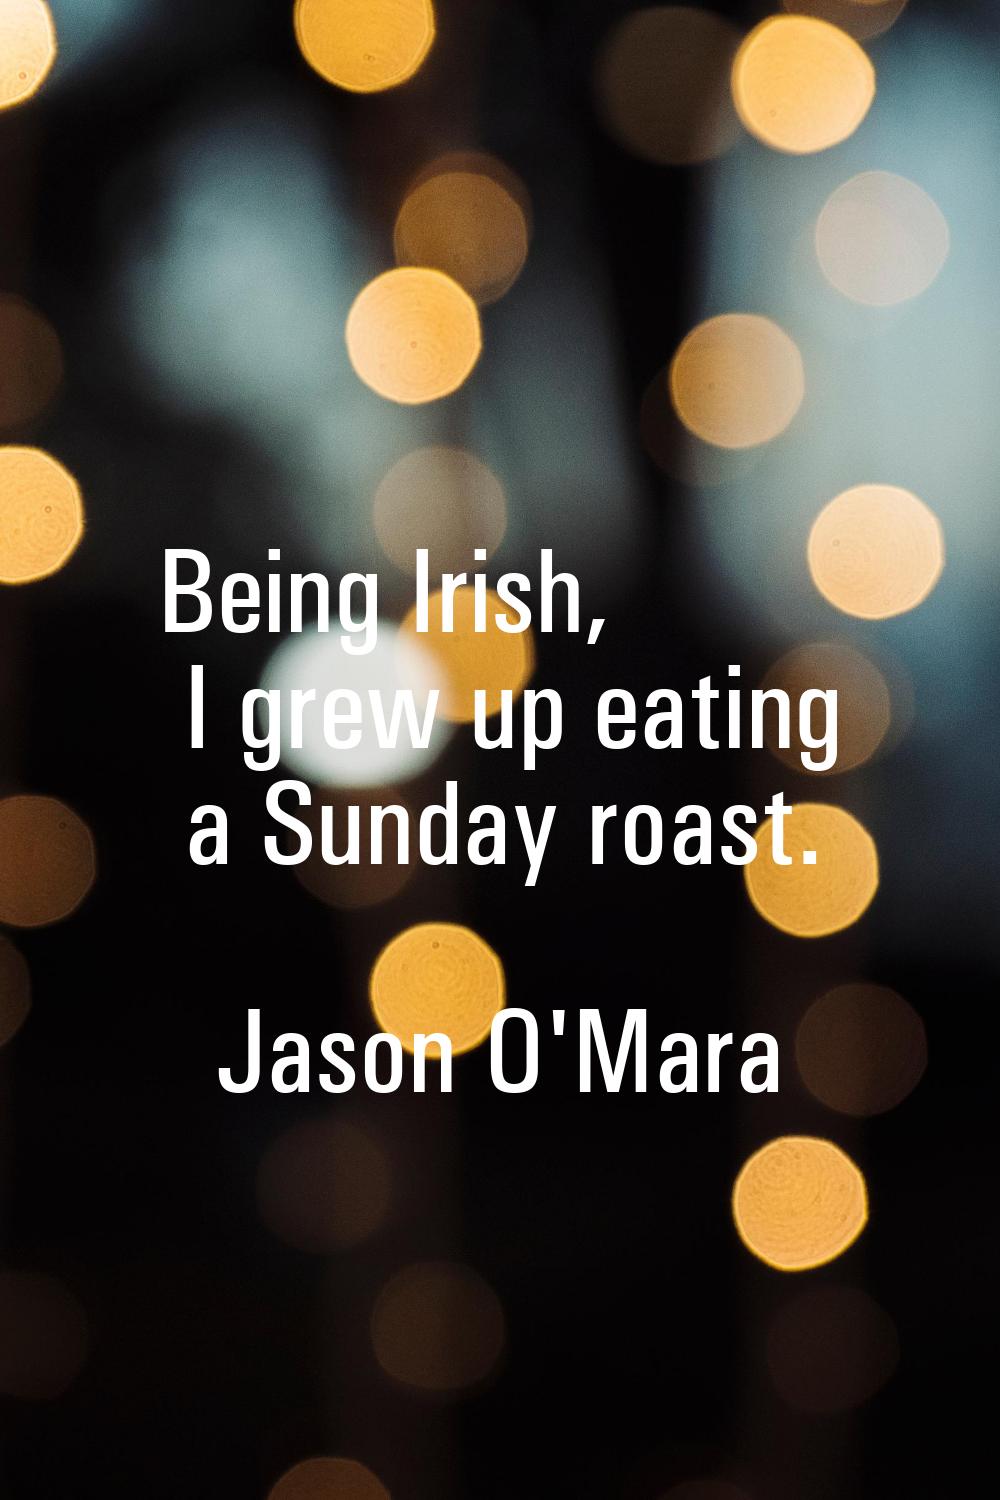 Being Irish, I grew up eating a Sunday roast.